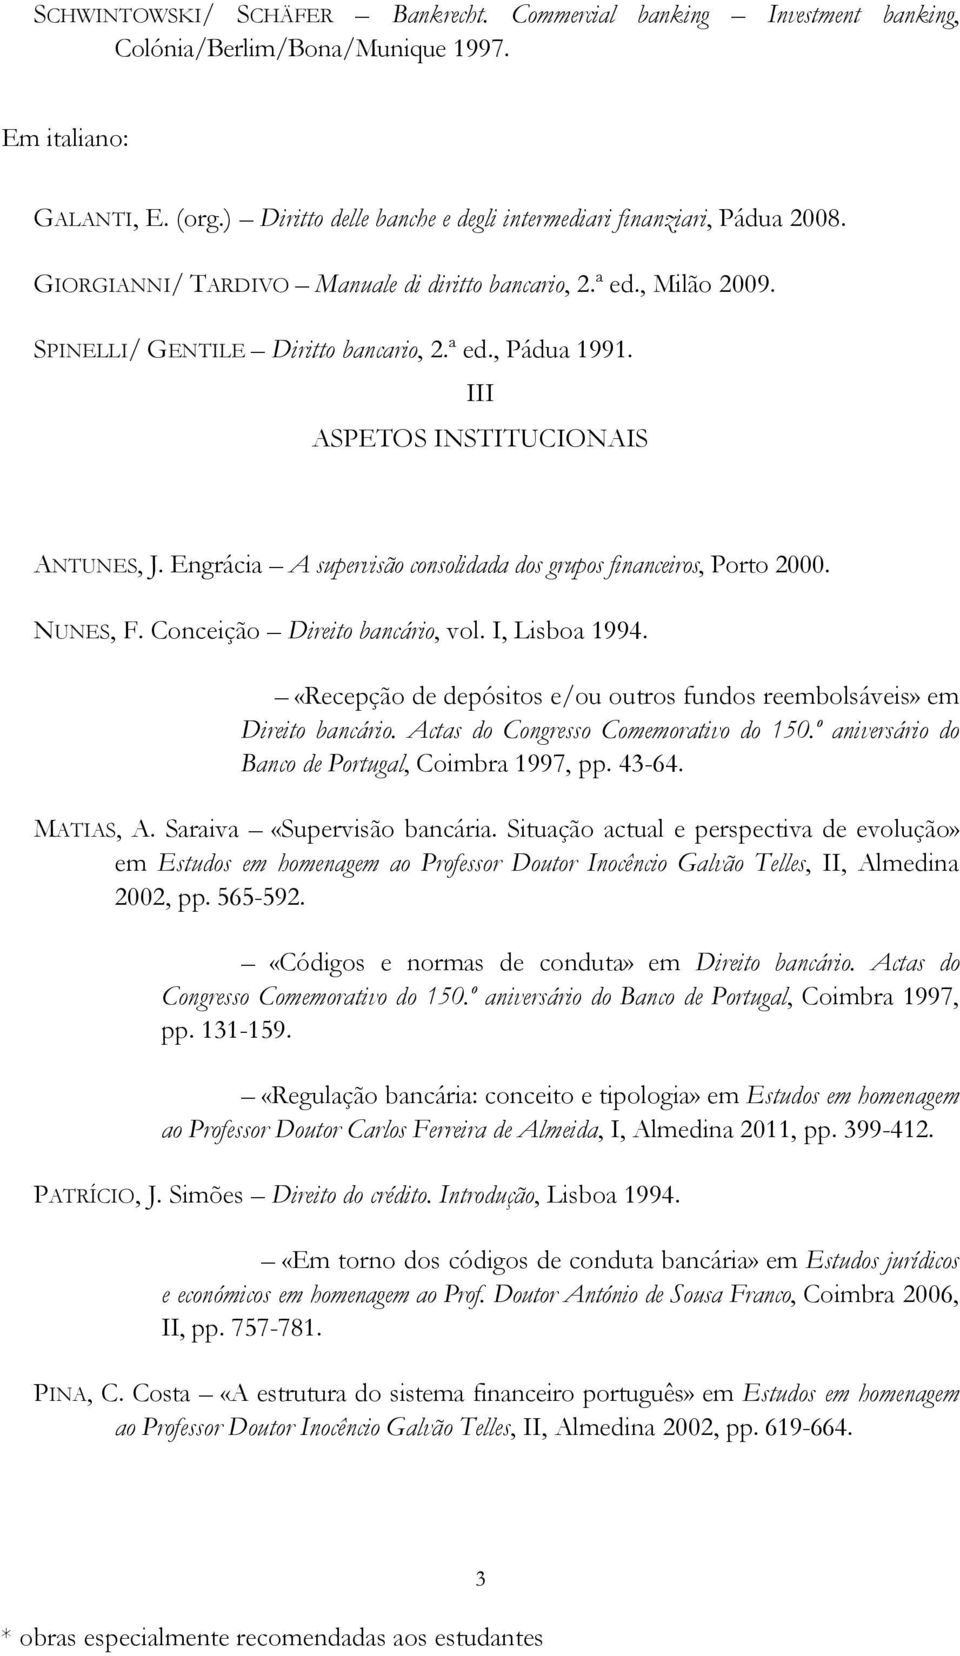 III ASPETOS INSTITUCIONAIS ANTUNES, J. Engrácia A supervisão consolidada dos grupos financeiros, Porto 2000. NUNES, F. Conceição Direito bancário, vol. I, Lisboa 1994.